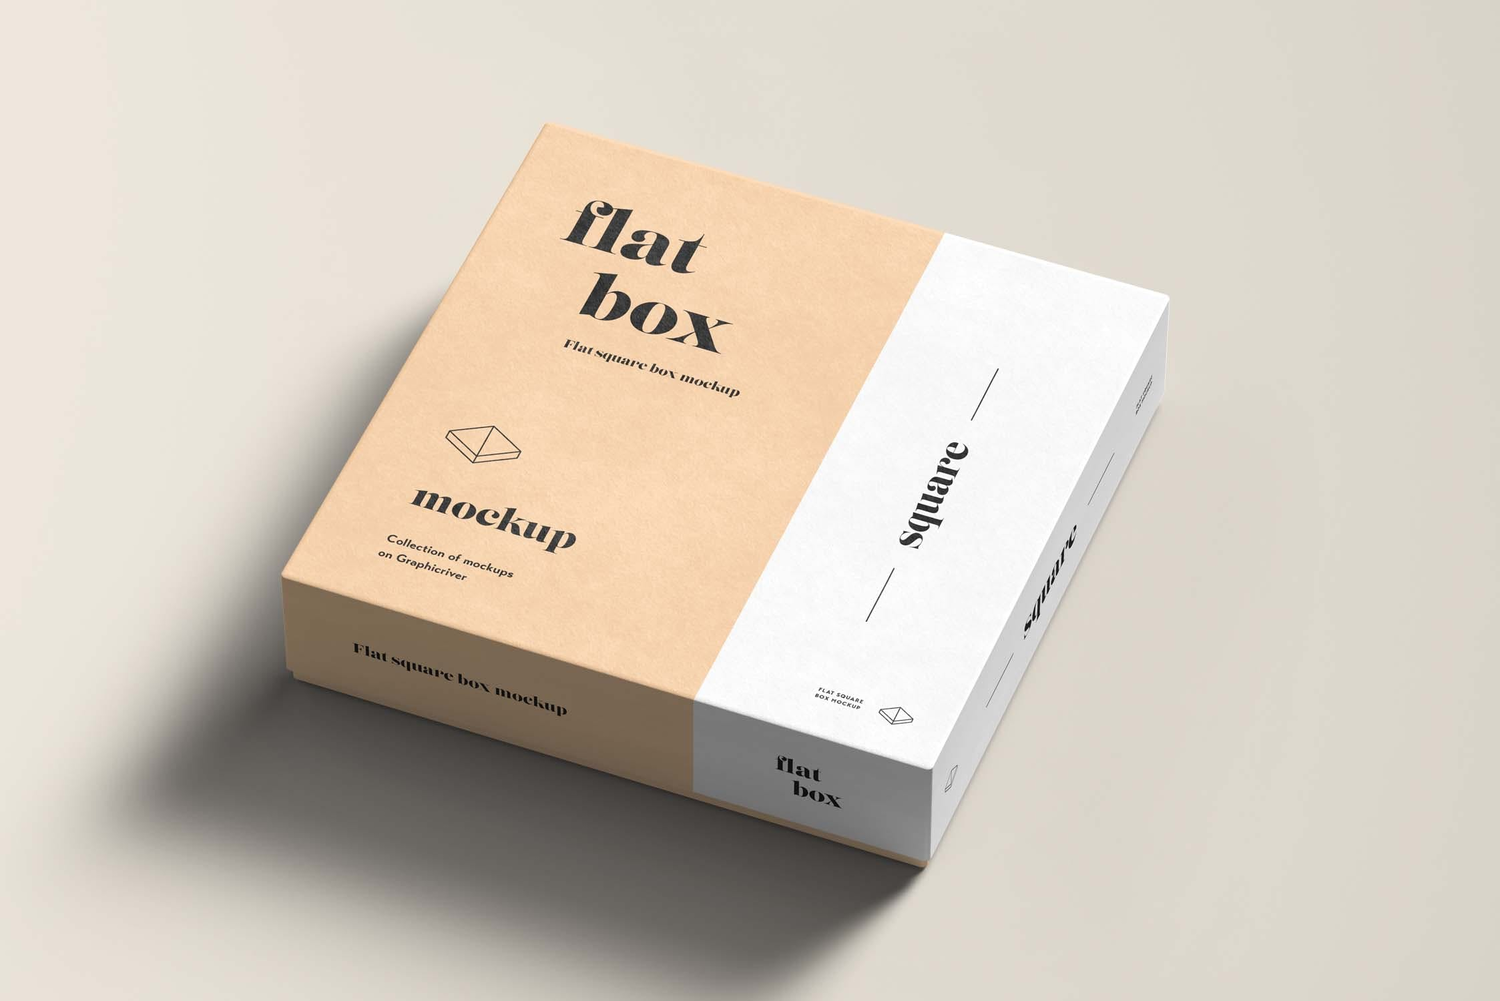 4772 正方形天地盖纸盒产品包装礼盒设计贴图ps样机素材展示效果模板 Flat Square Box Mock-up@GOOODME.COM